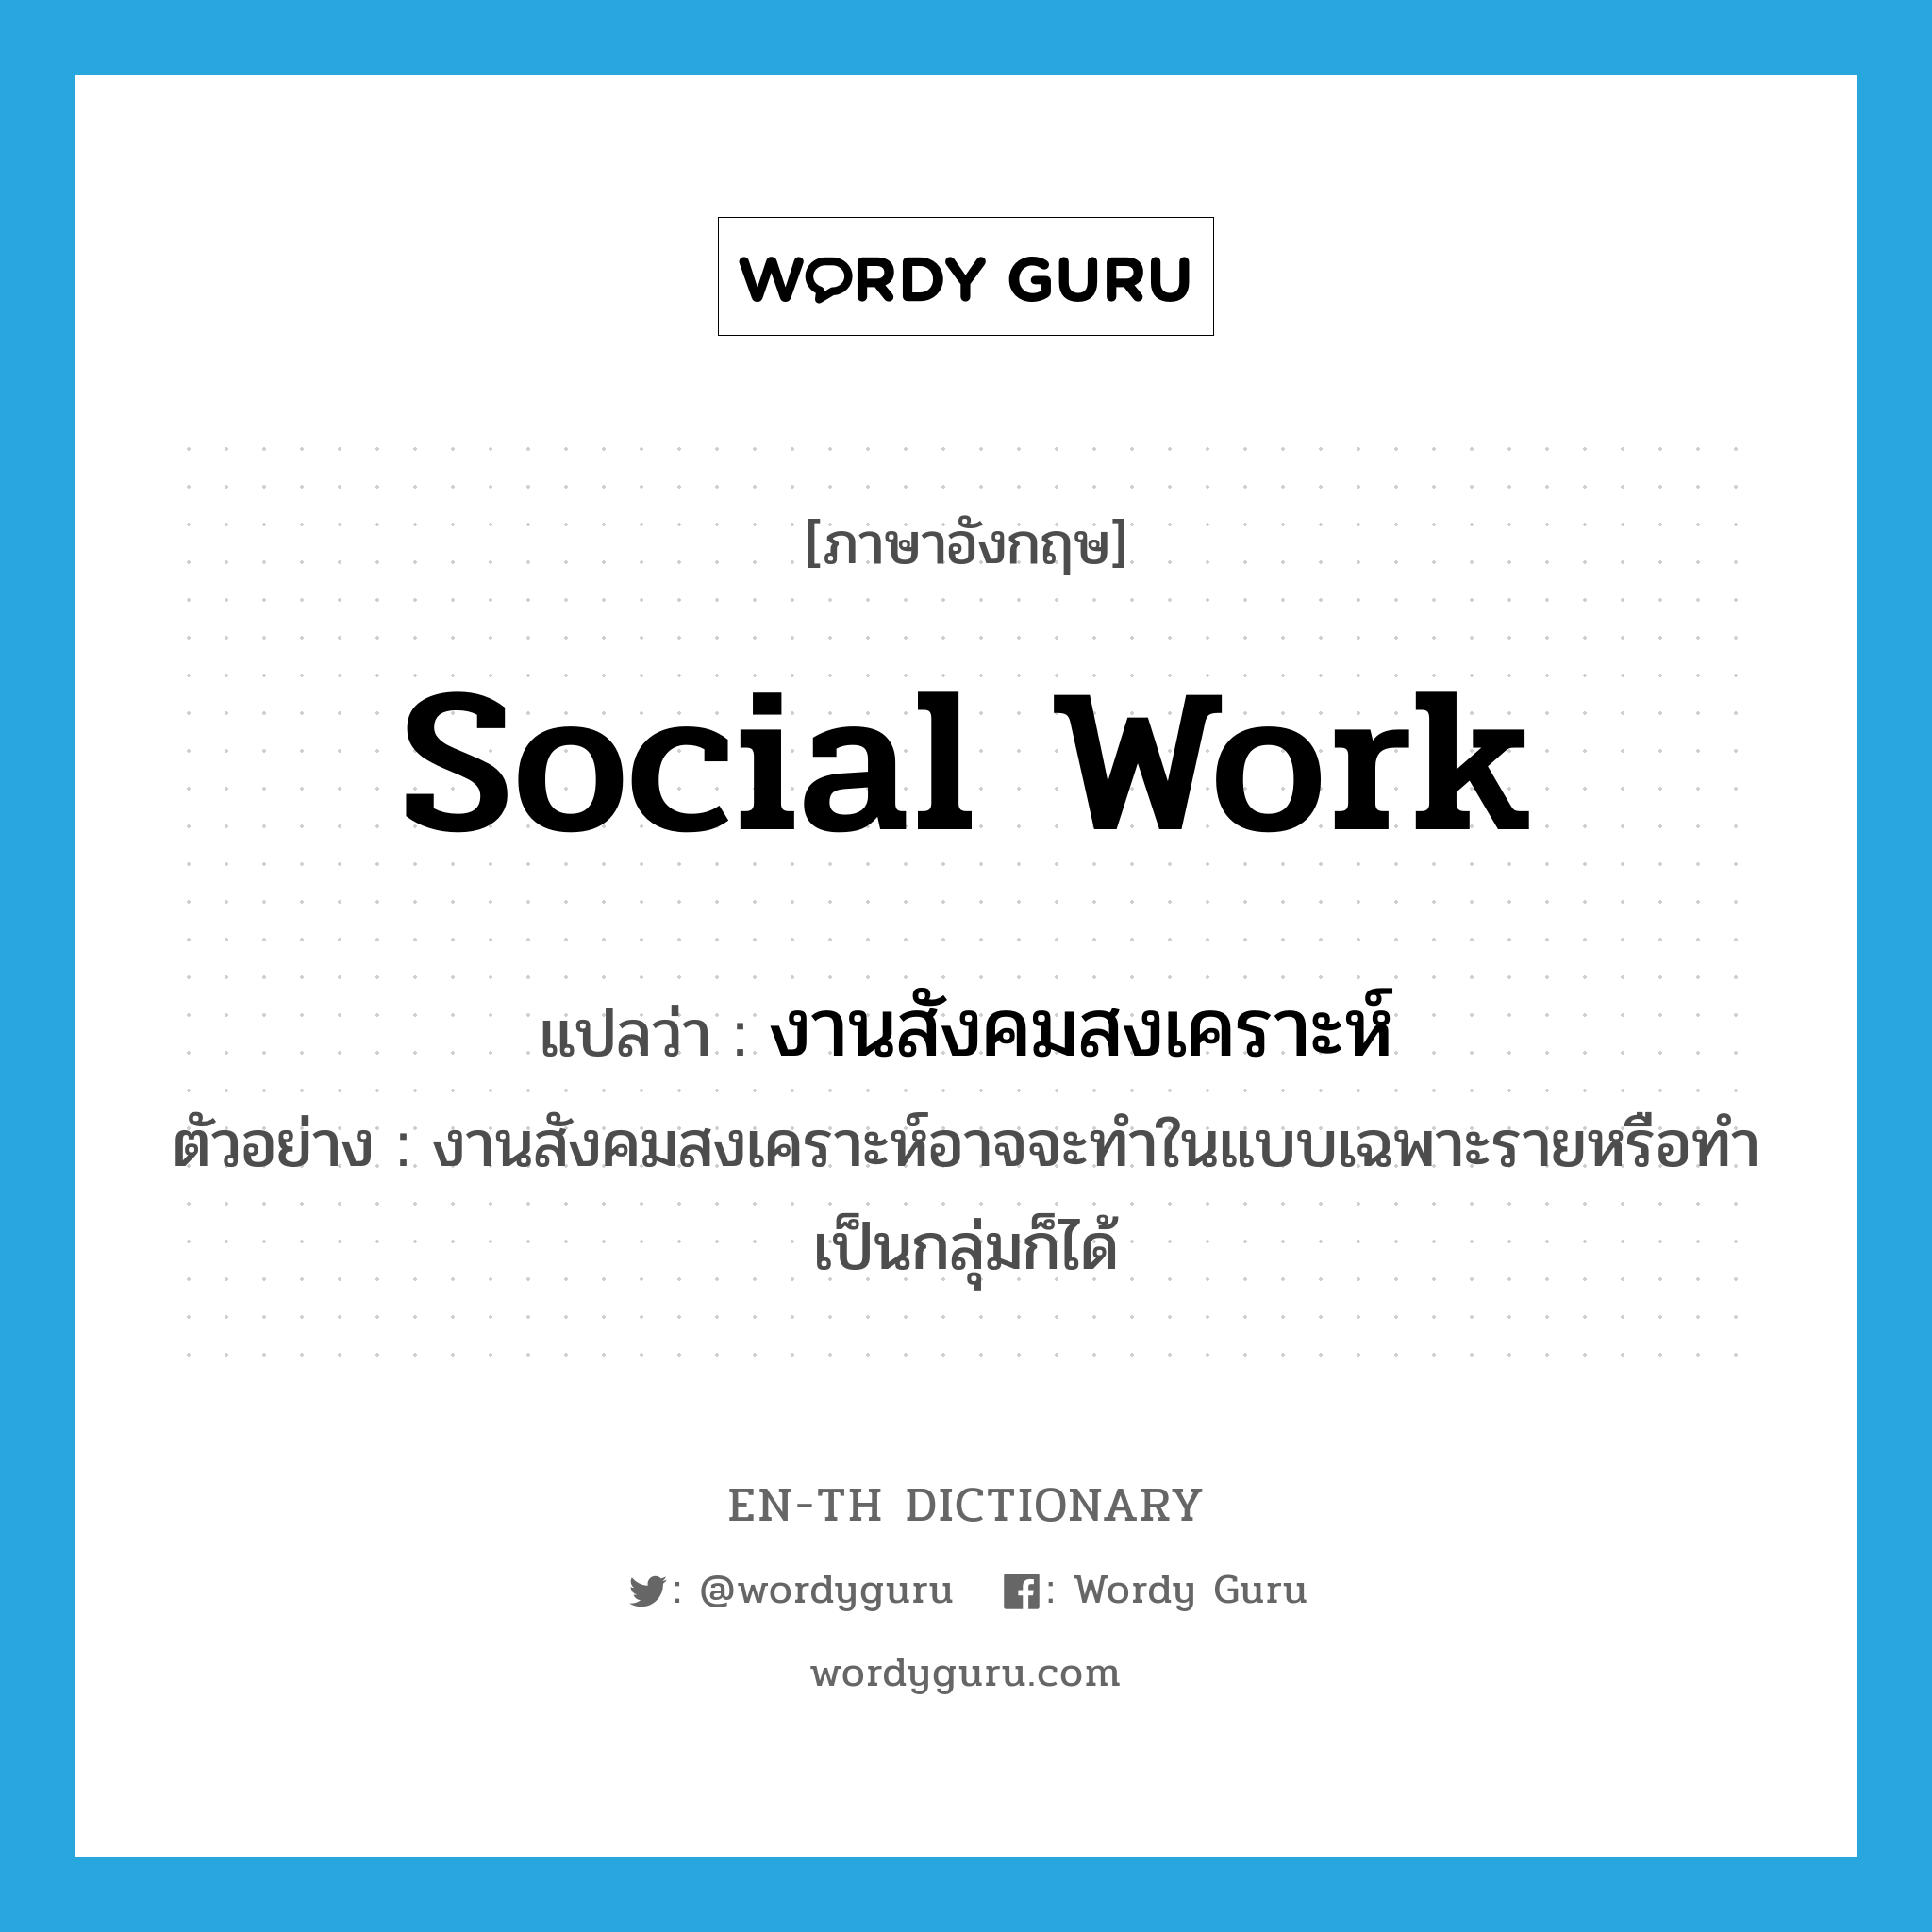 งานสังคมสงเคราะห์ ภาษาอังกฤษ?, คำศัพท์ภาษาอังกฤษ งานสังคมสงเคราะห์ แปลว่า social work ประเภท N ตัวอย่าง งานสังคมสงเคราะห์อาจจะทำในแบบเฉพาะรายหรือทำเป็นกลุ่มก็ได้ หมวด N